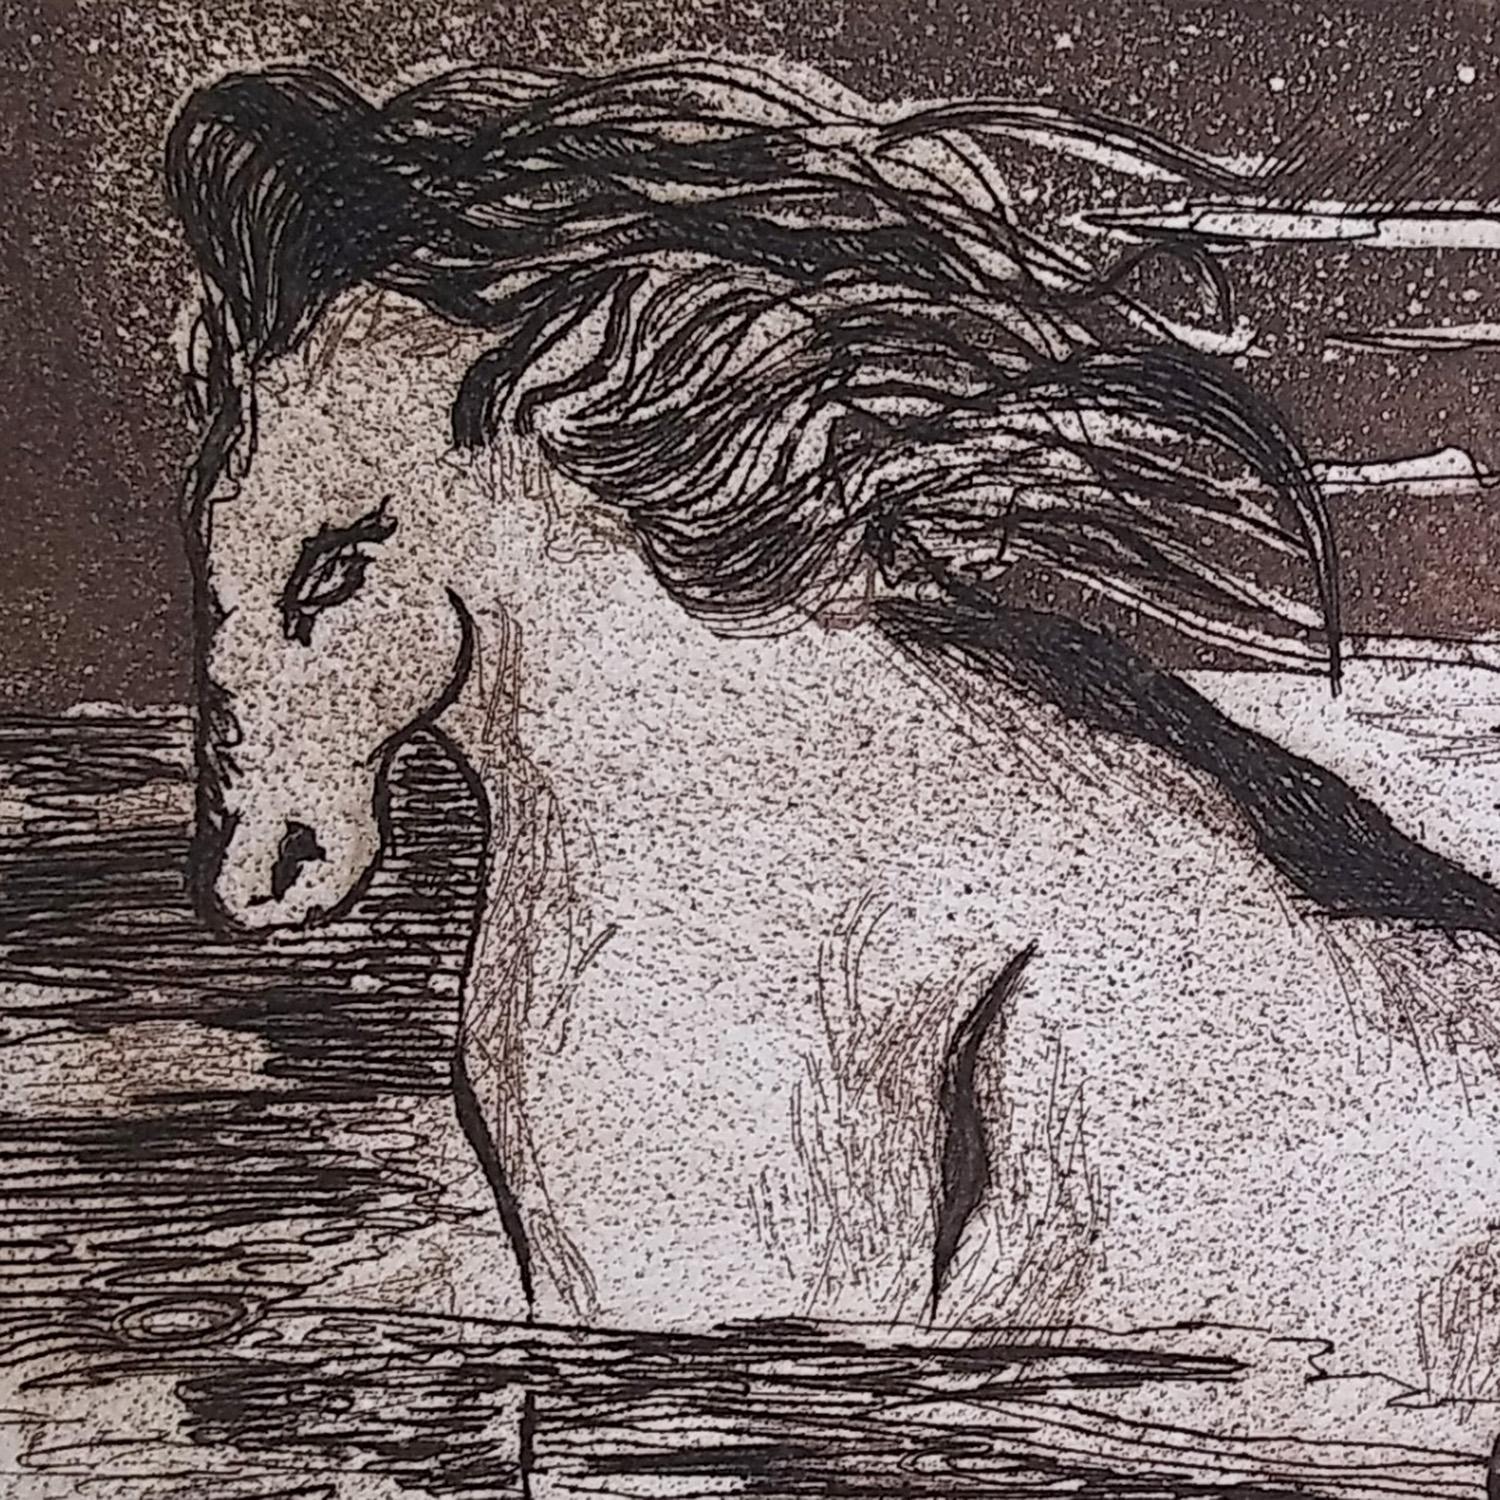 Il s'agit d'une gravure impressionniste de l'artiste de San Diego, Lenore Simon. Ses dimensions sont de 17x12. Un certificat d'authenticité suivra la livraison de cette œuvre d'art.

Il s'agit d'une belle gravure représentant un cheval dans l'eau.